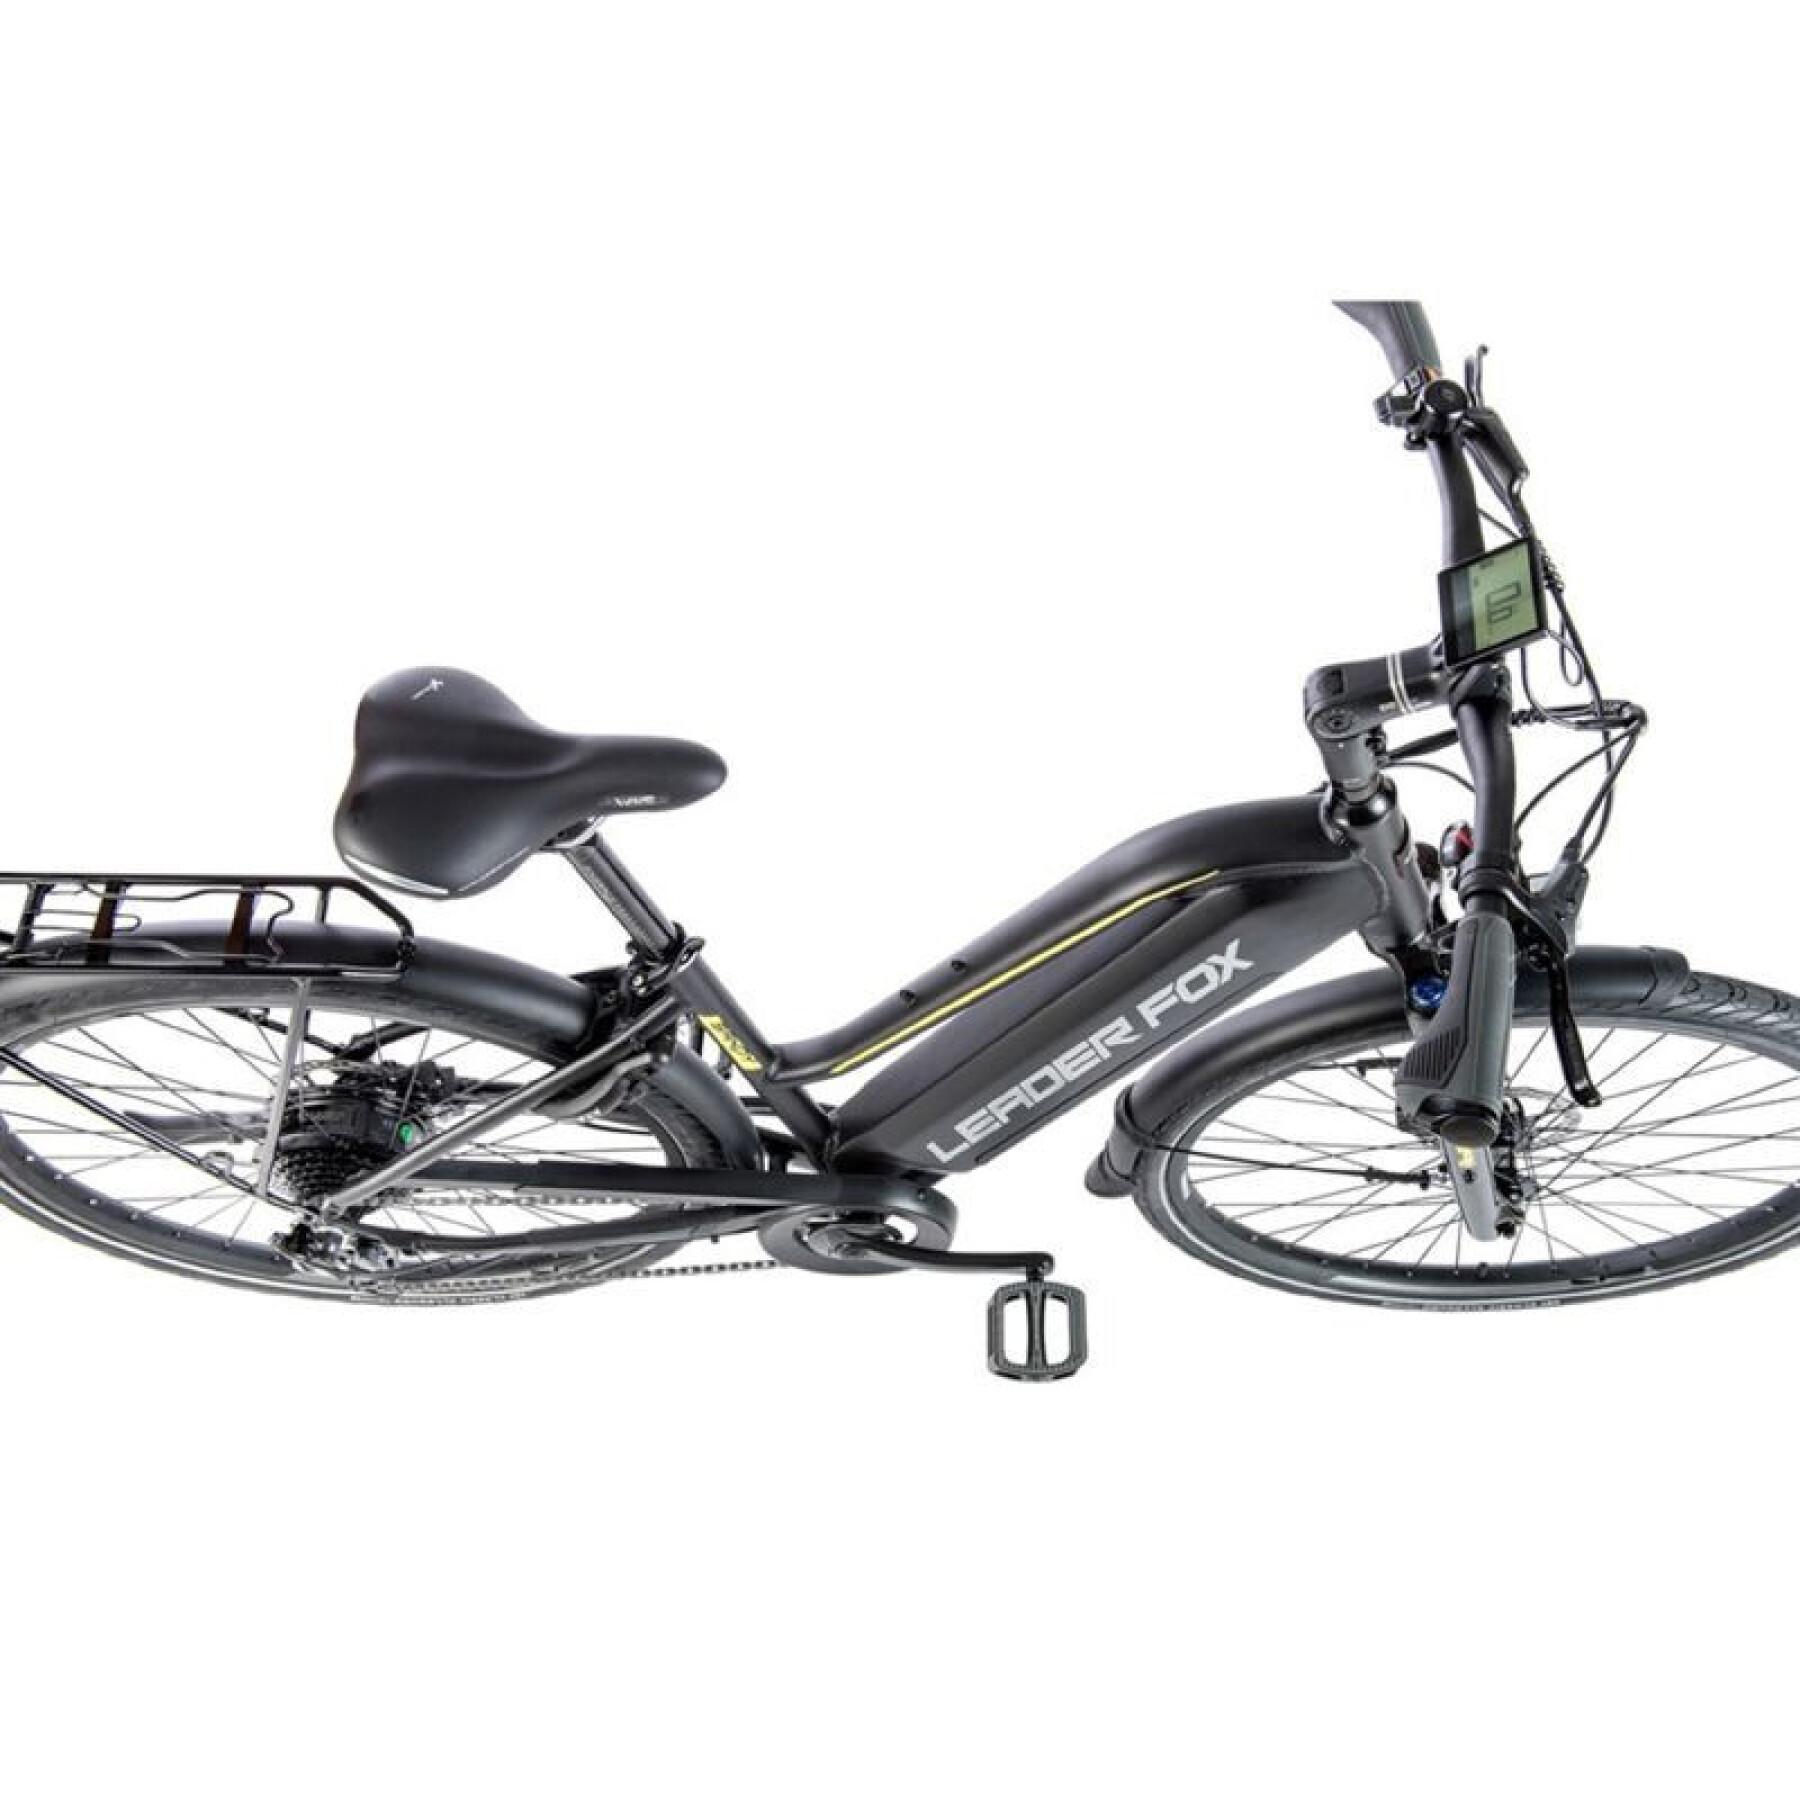 Bicicleta eléctrica city 28 motor rueda trasera mujer Leader Fox Sandy 2021 7V Bafang 36V 45NM 15AH